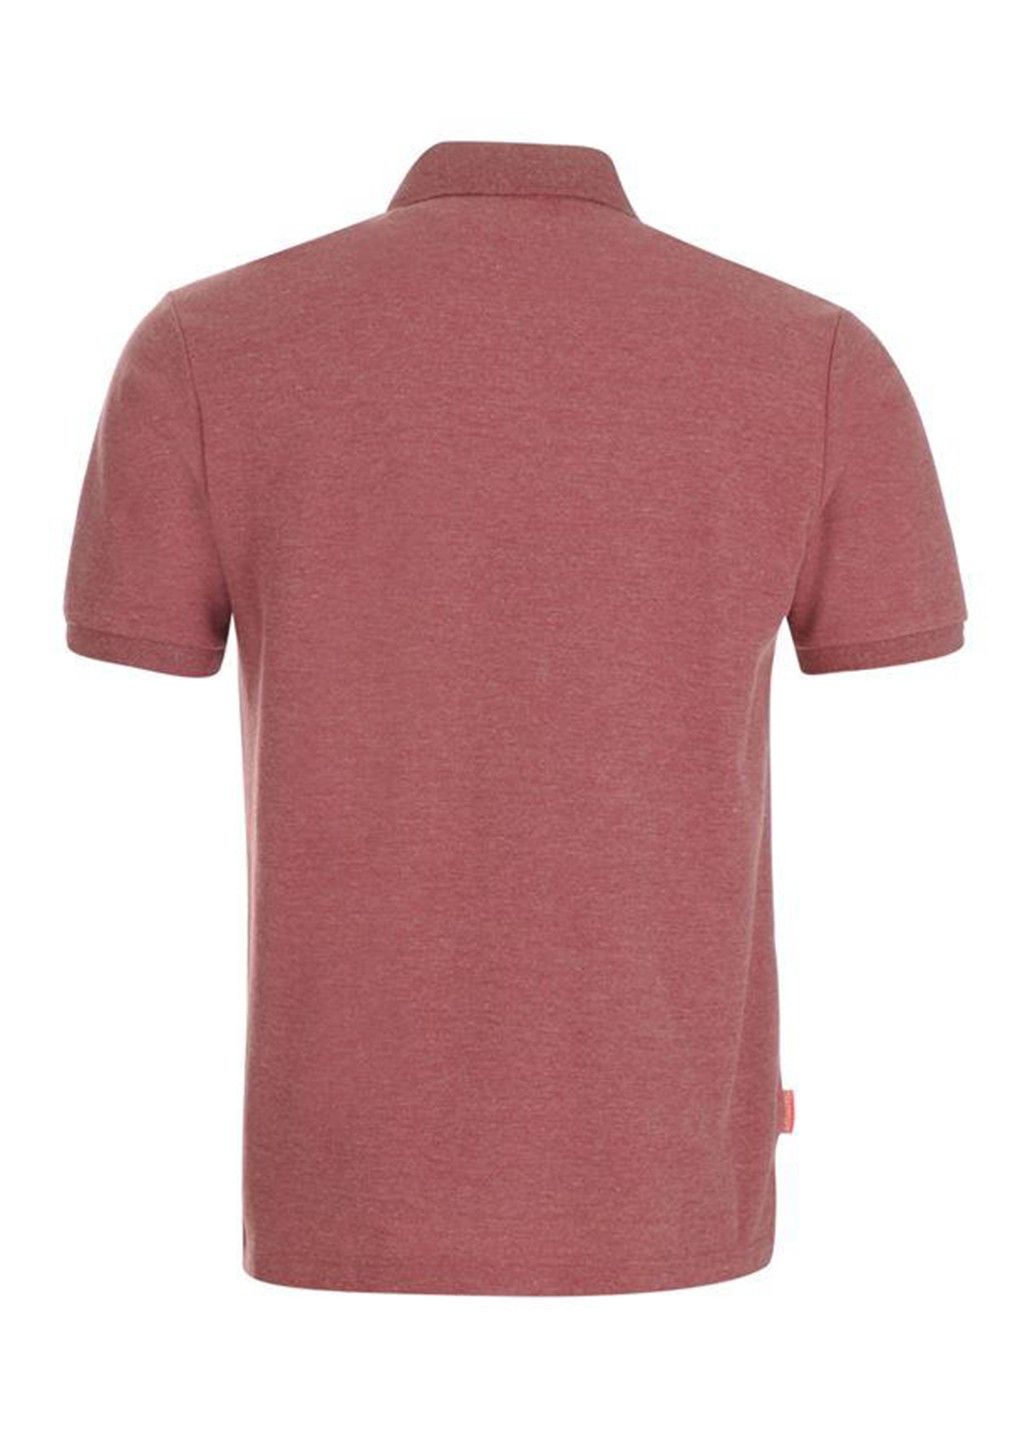 Бледно-розовая футболка-поло для мужчин Slazenger меланжевая